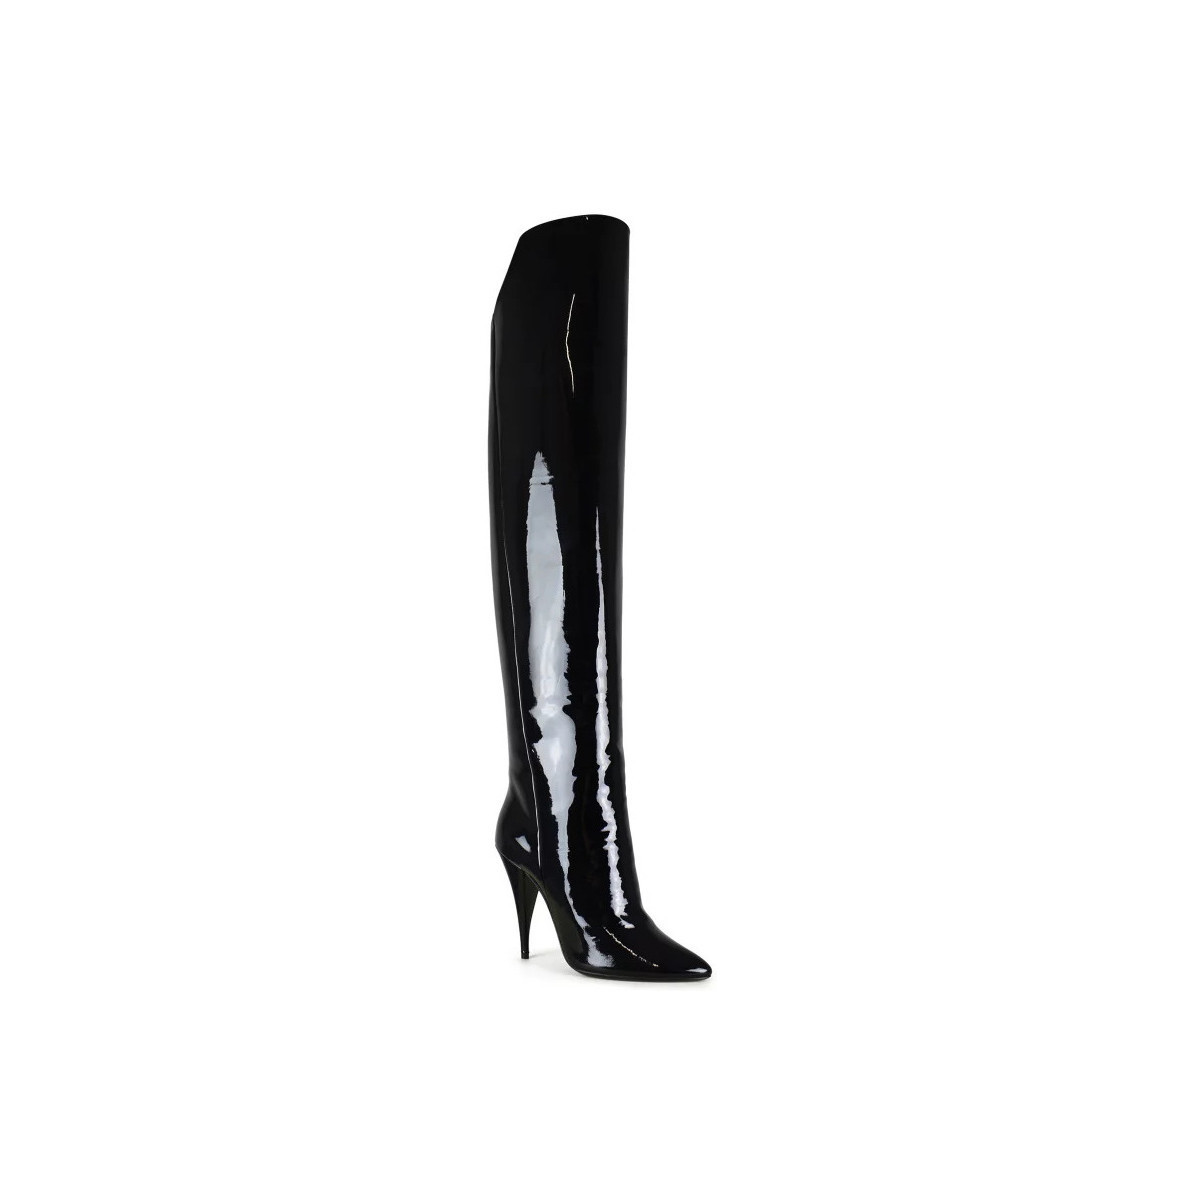 Scarpe Calzature donna Stivali Stivali flosci a tubo Stivali YSL con tacco alto in camoscio nero con nappe eu 39 